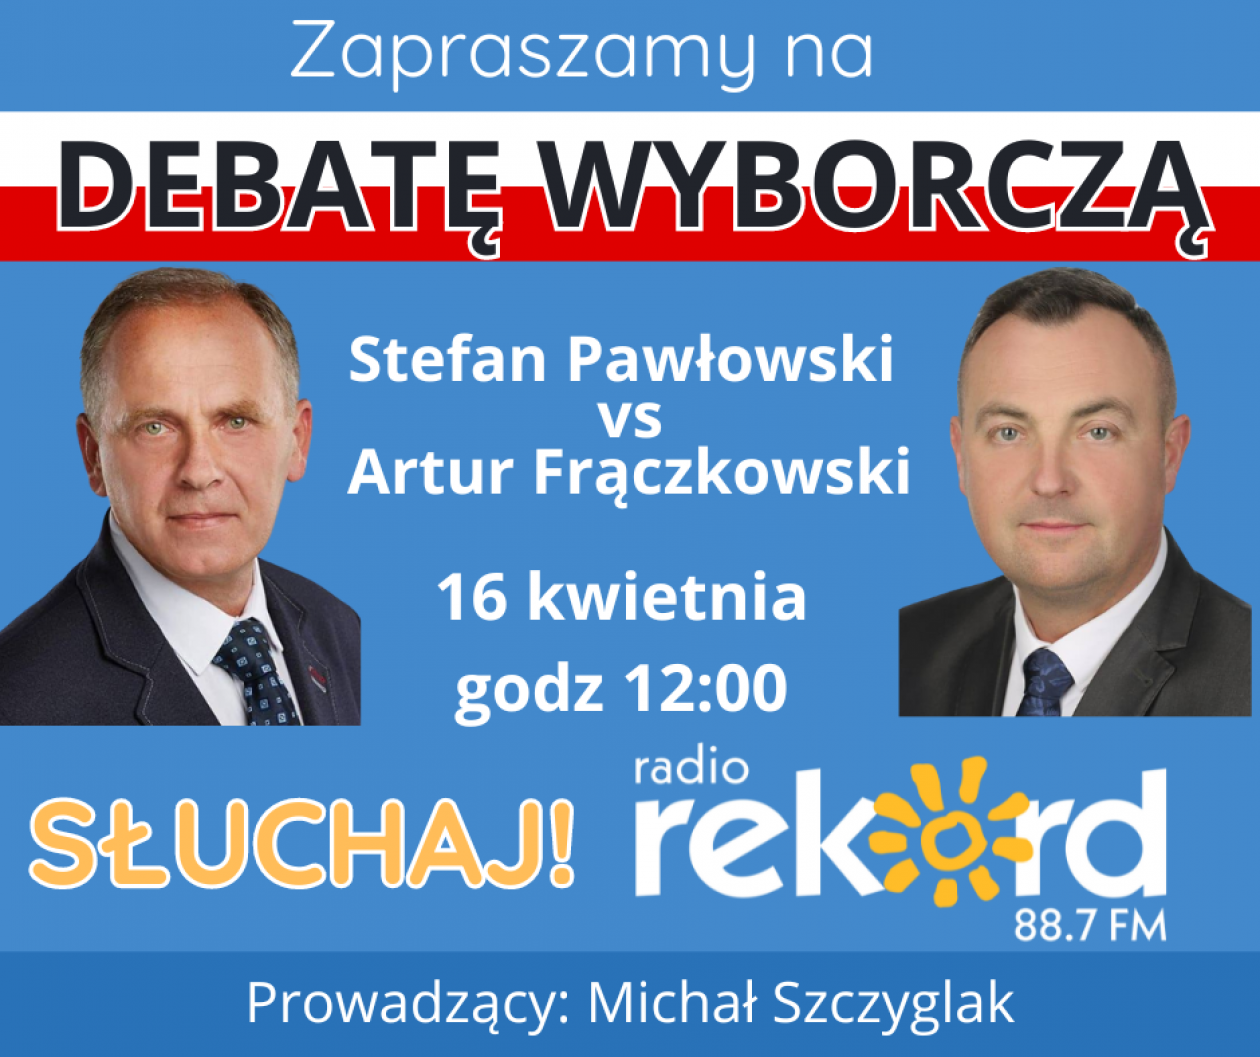 Debata wyborcza. Pawłowski czy Frączkowski? 